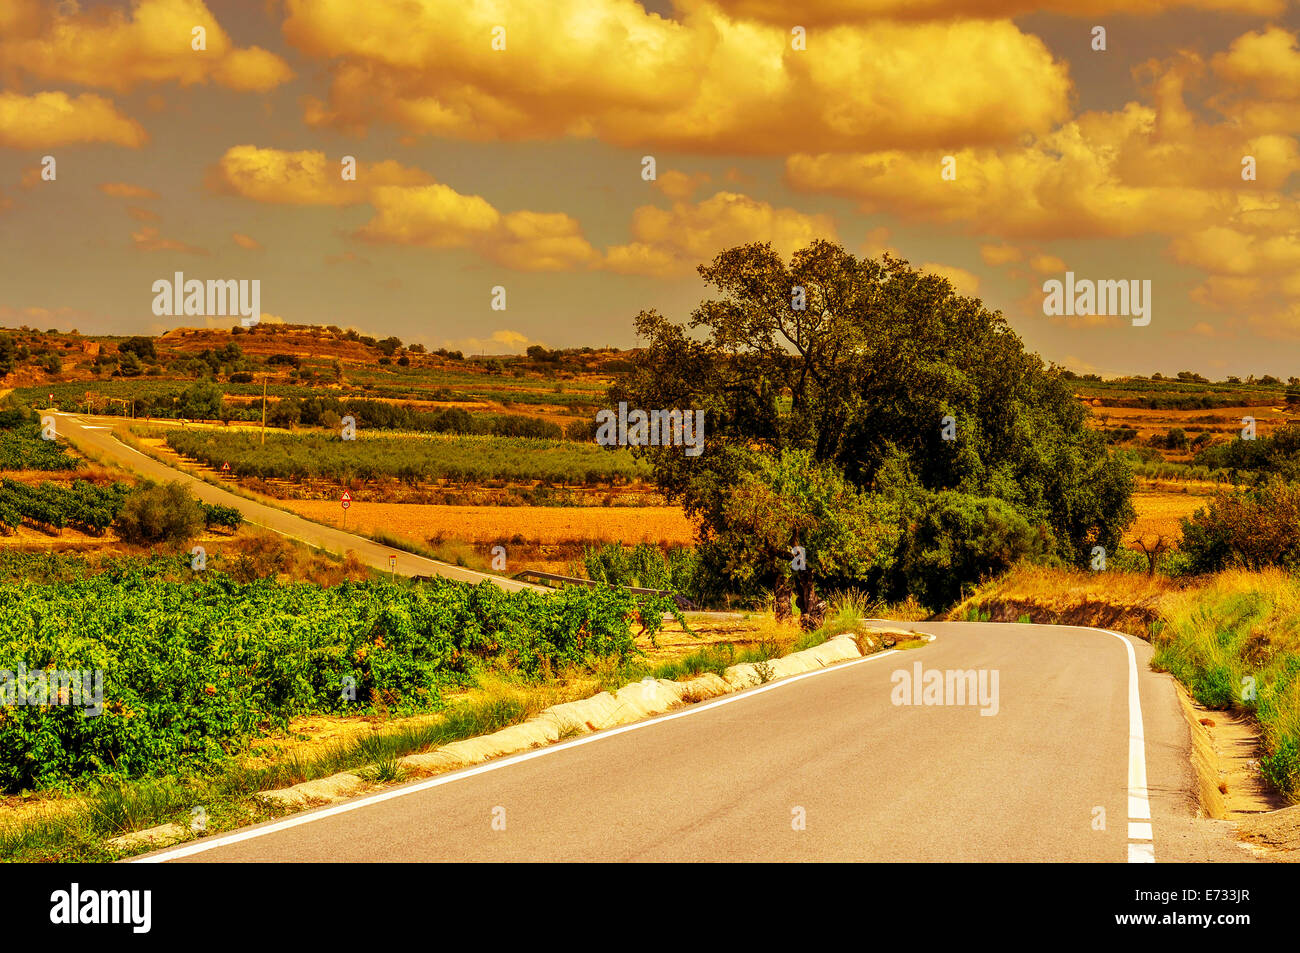 Vista di un tranquillo paesaggio con vigneti e una strada secondaria in un paese mediterraneo al tramonto Foto Stock